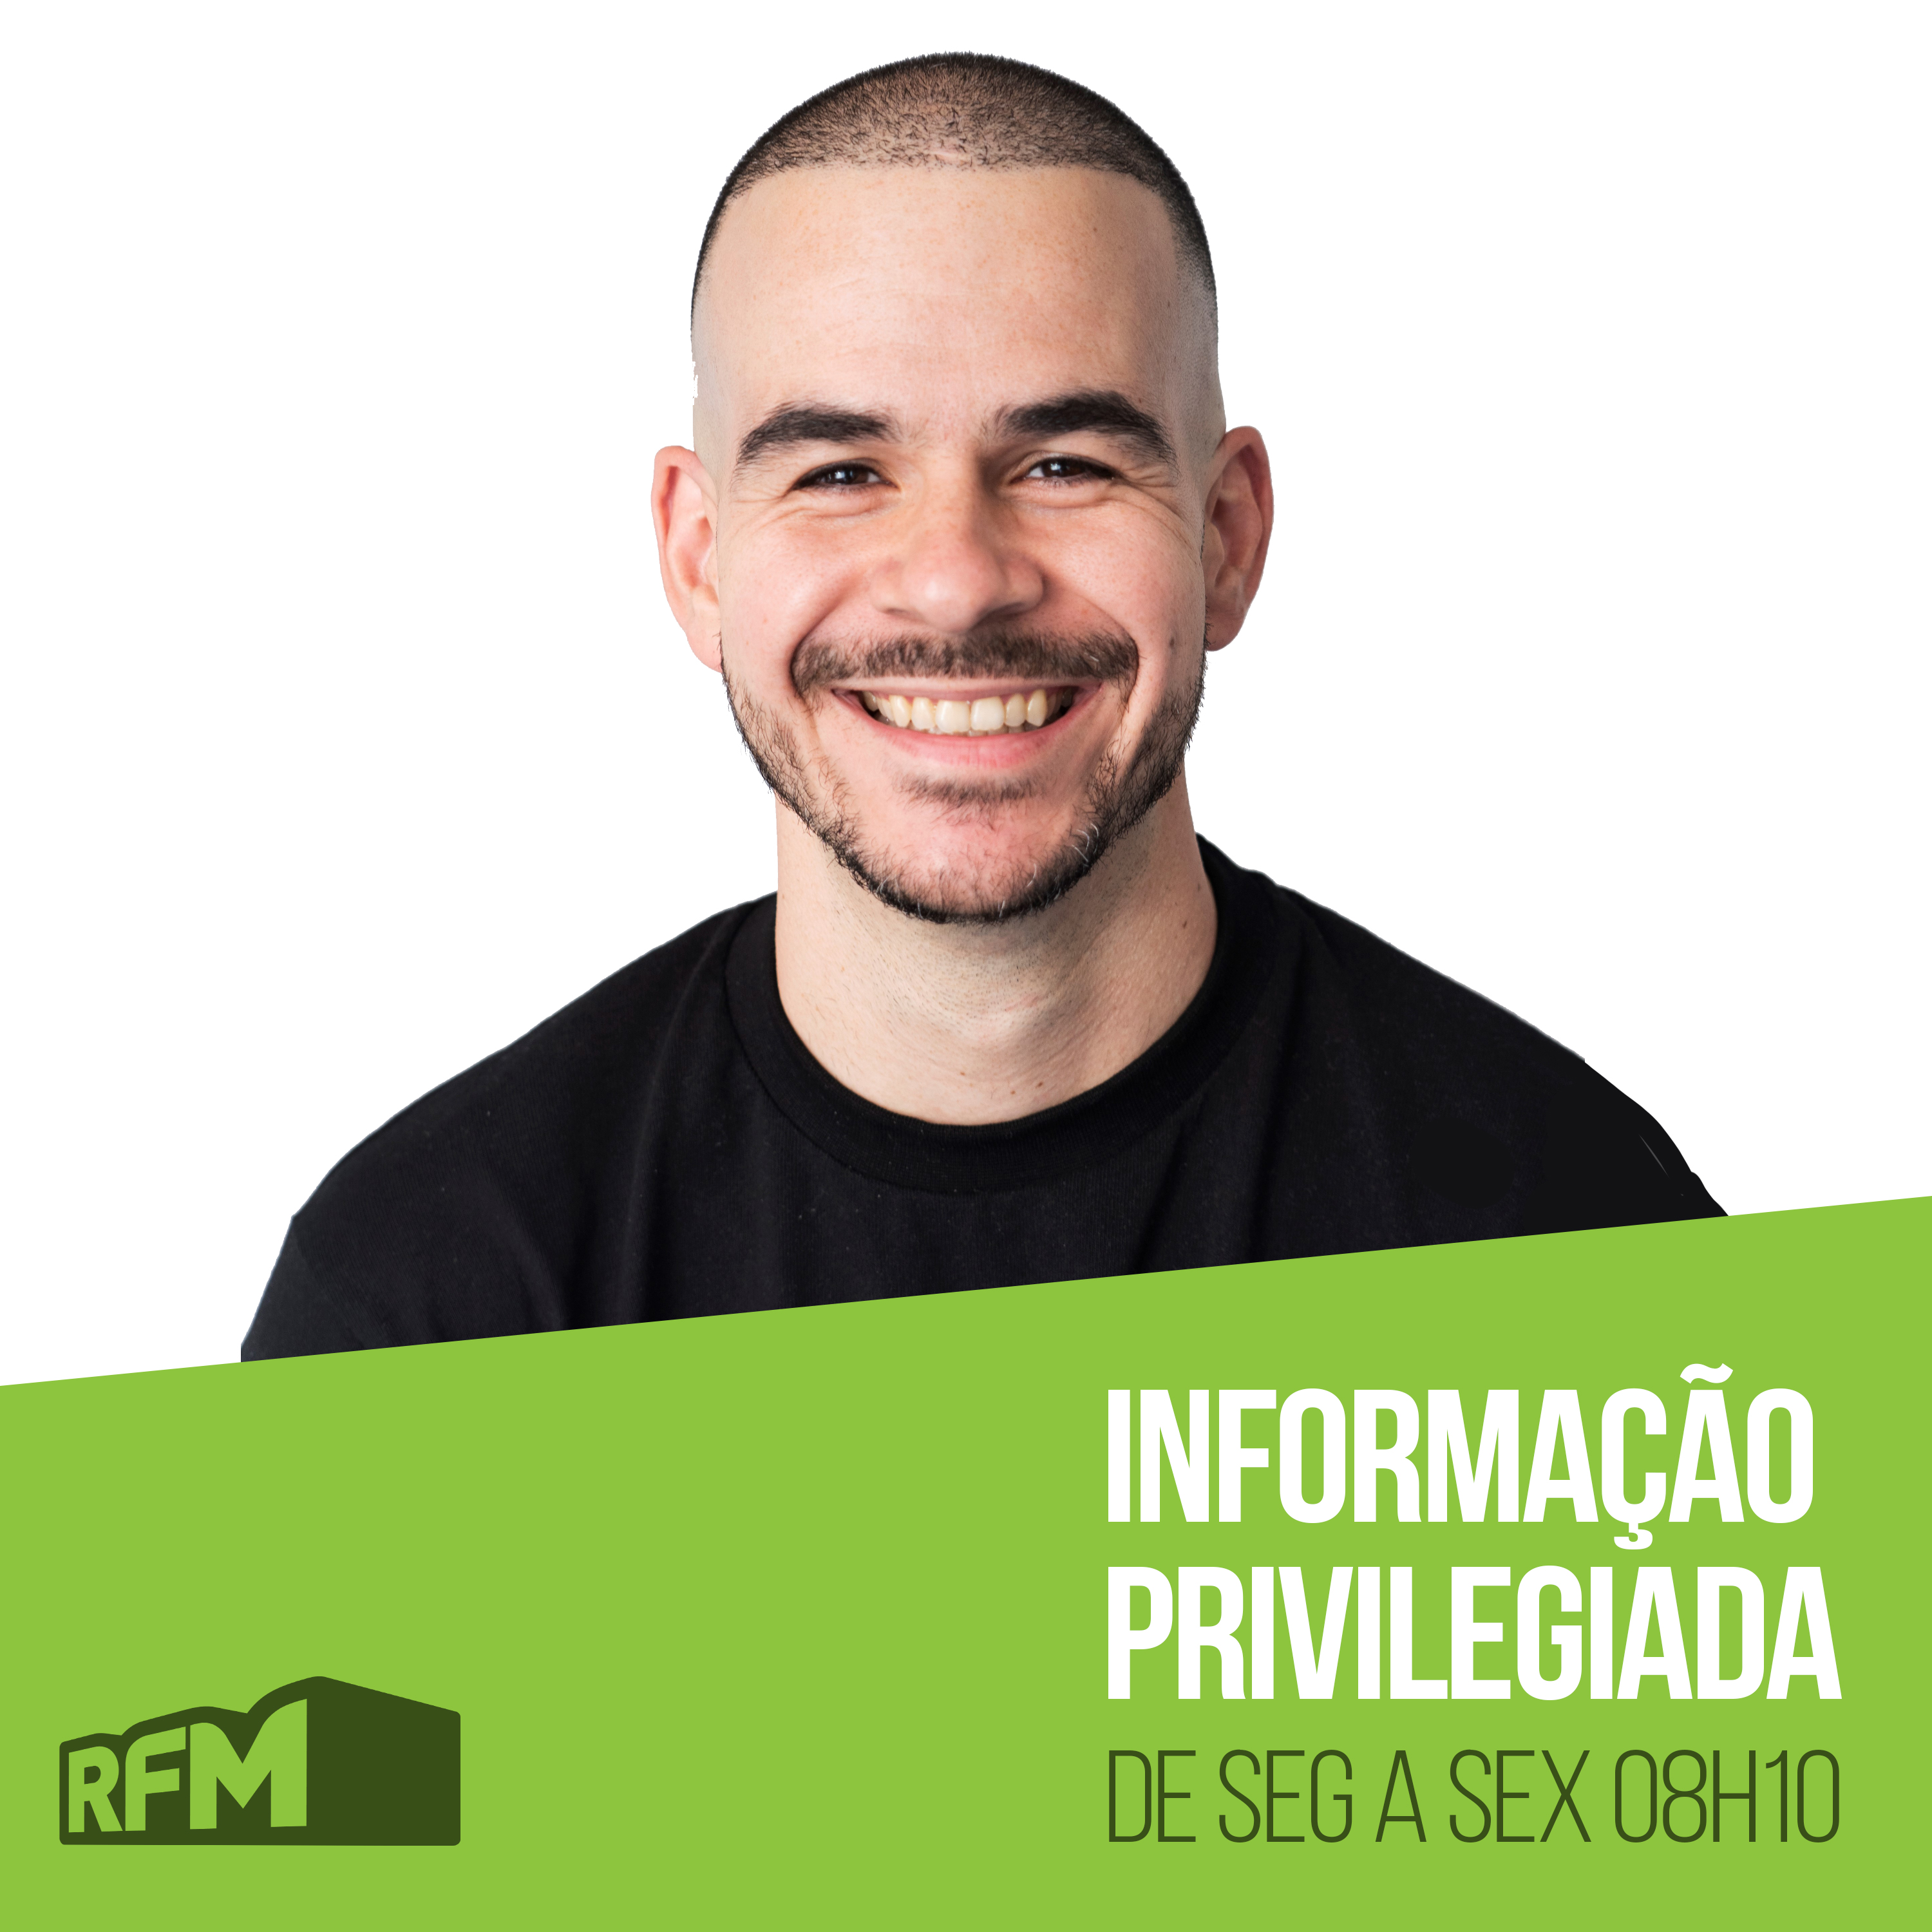 RFM - INFORMAÇÃO PRIVILEGIADA: TIO TOPÊ COMENTA STAND-UP DE DUARTE